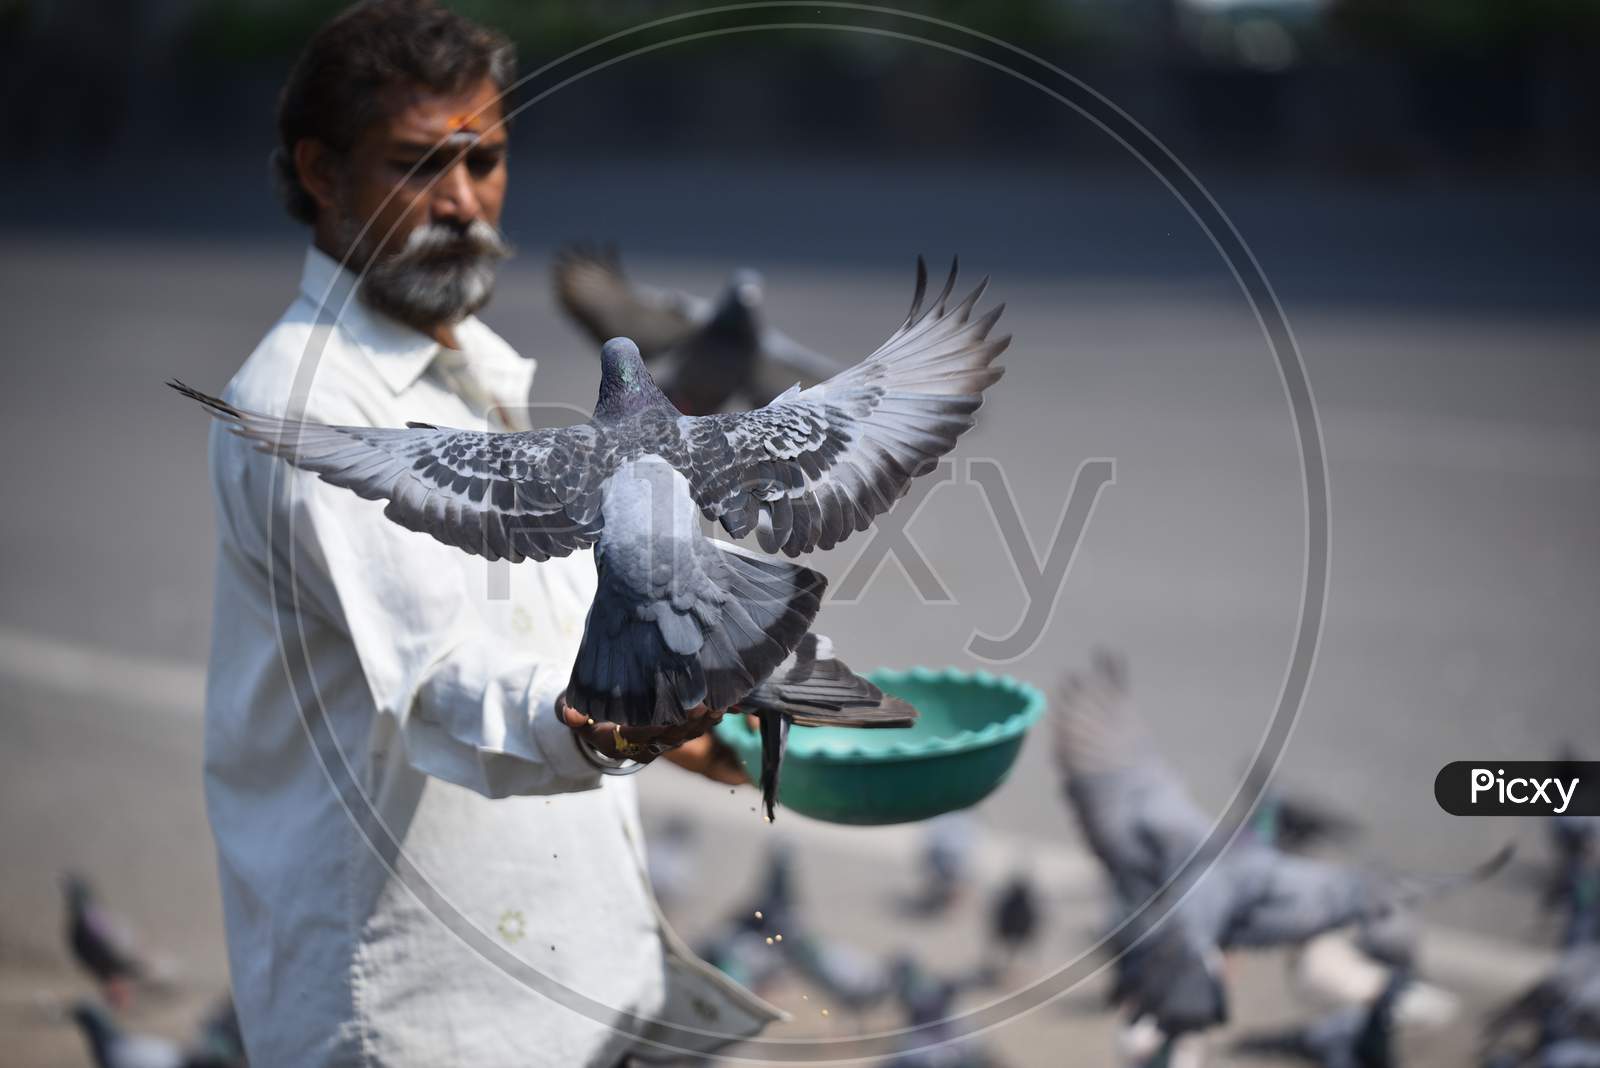 a man feeds pigeons